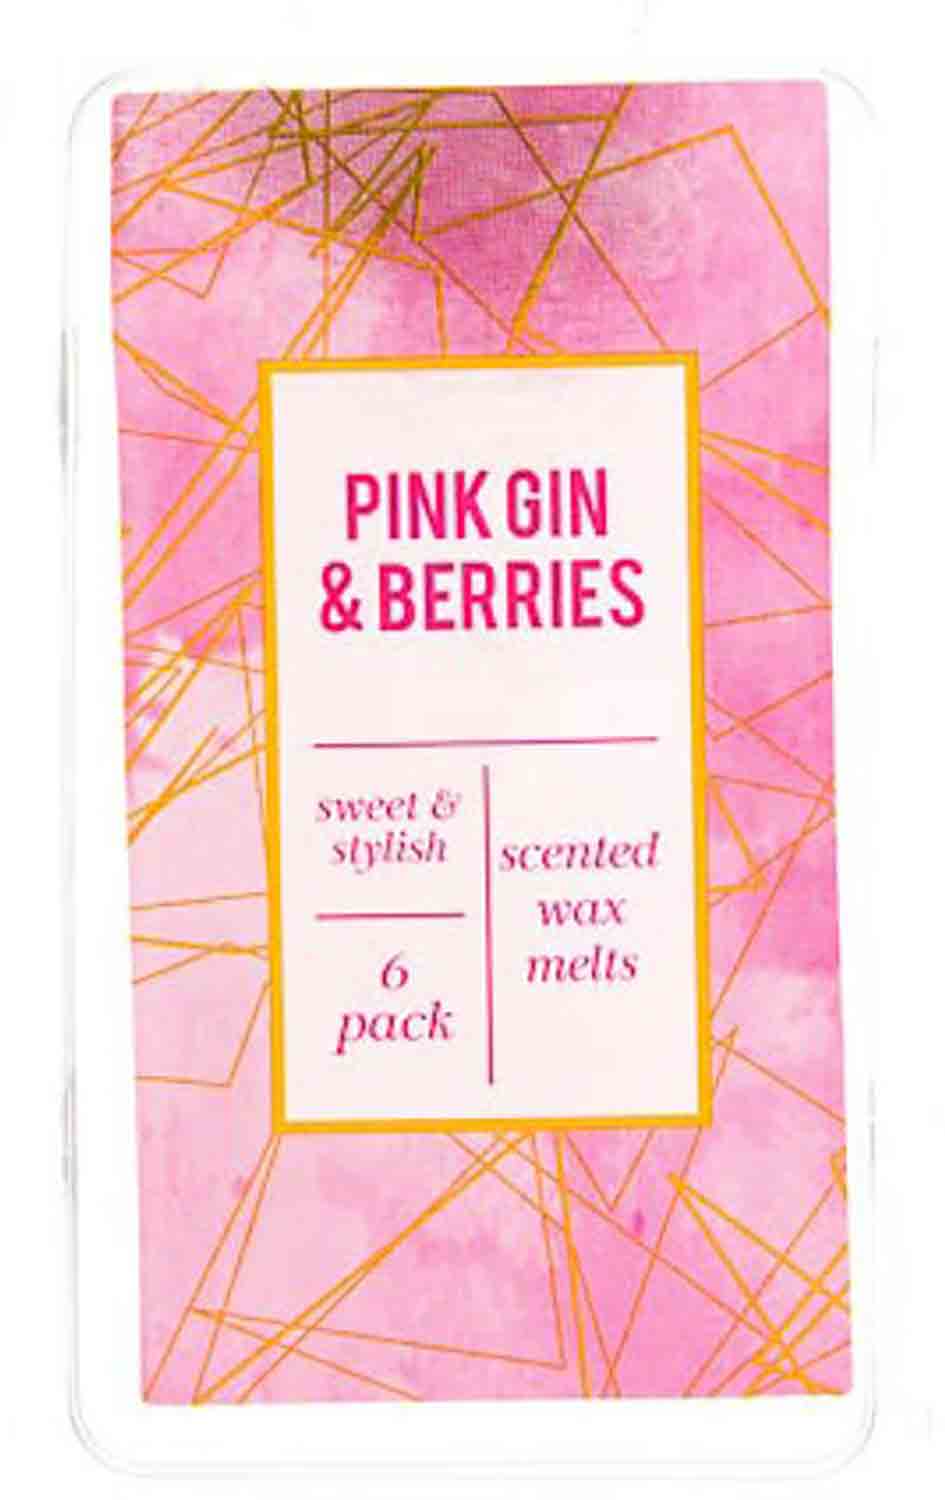 Pink Gin & Berries vonný vosk 6 kusů